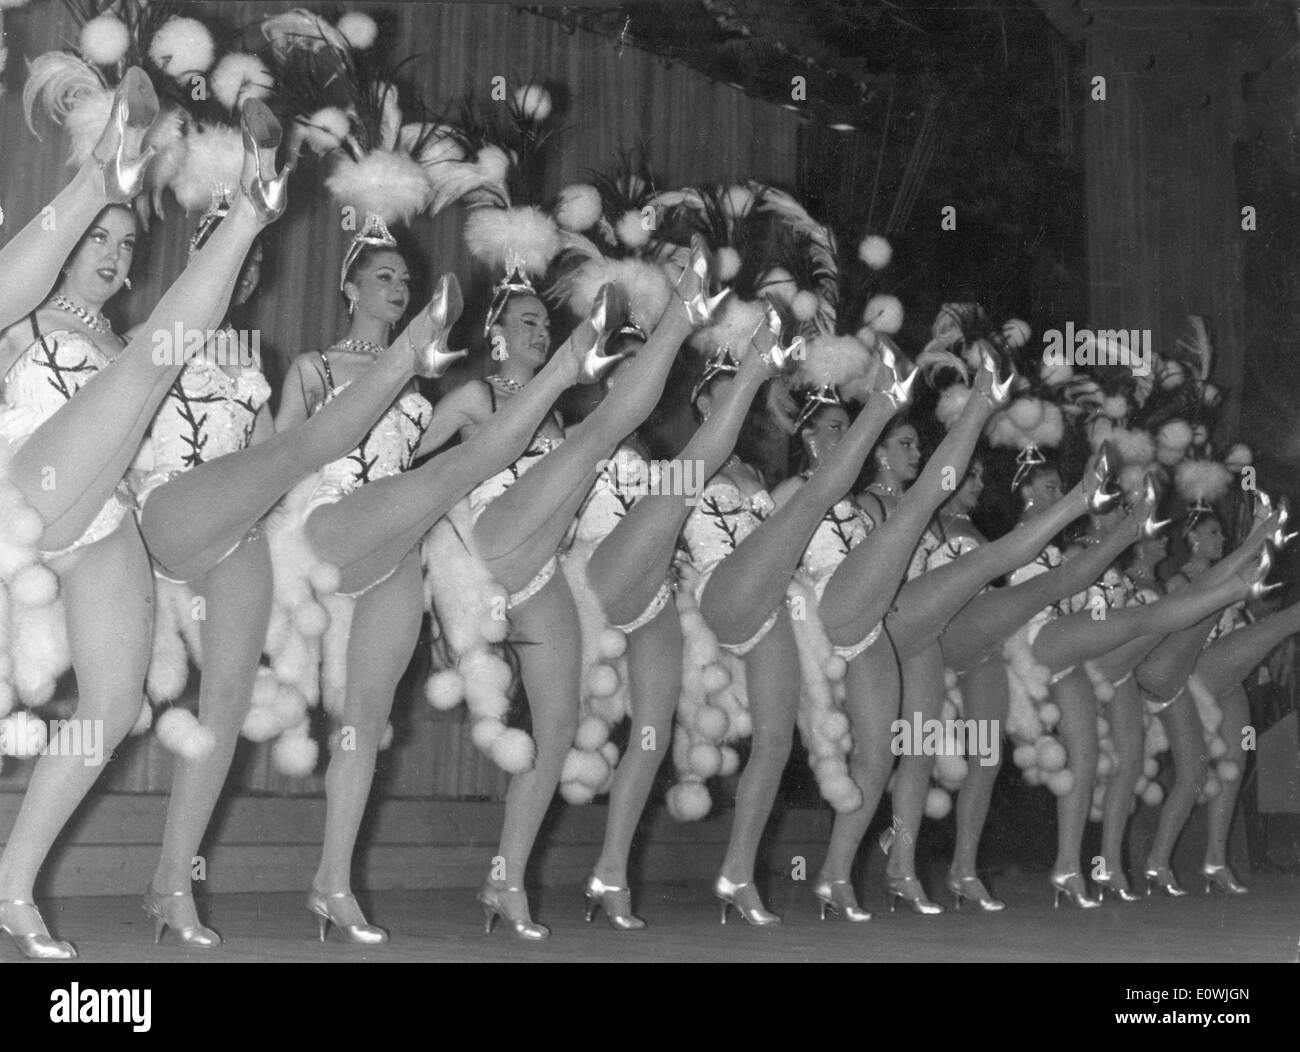 Giugno 4, 1963 - Parigi, Francia - mondo-famoso Moulin Rouge Cabaret, immortalato da Toulouse-Lautrec è situato a Montmartre, il solo posto a Parigi dove si può vedere la vera può Can. Il Moulin Rouge è una destinazione turistica che offre spettacoli di danza e musica per i visitatori adulti provenienti da tutto il mondo. Nella foto: Moulin Rouge 'Doris ragazze". Foto Stock